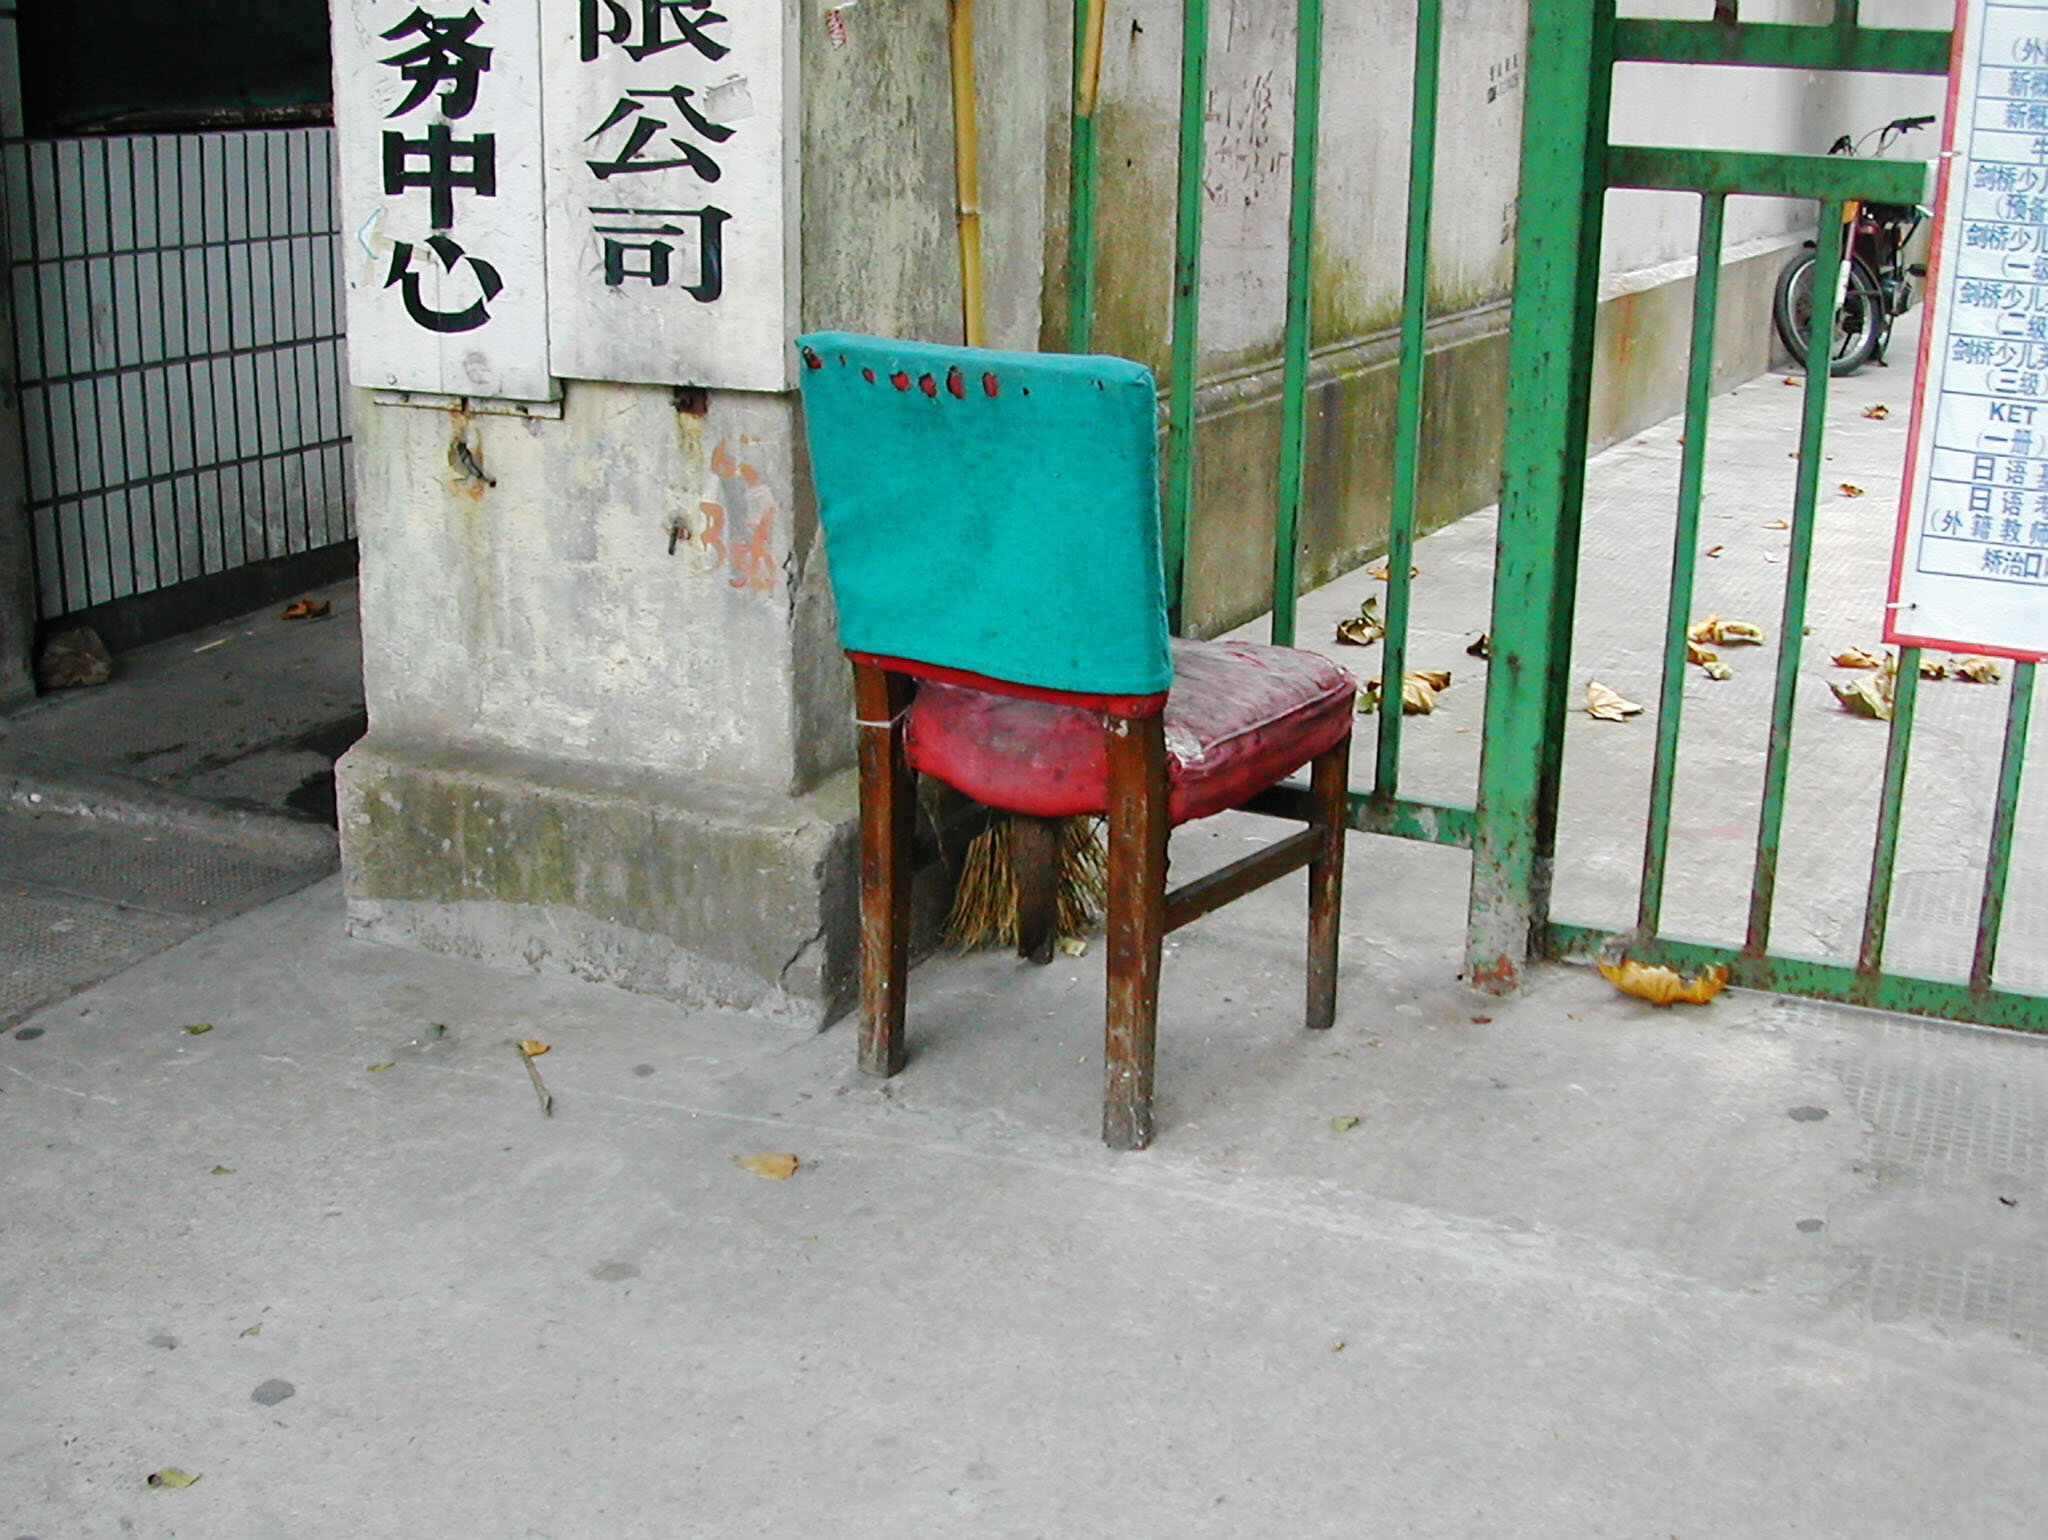  Shanghai Chair No. 21 